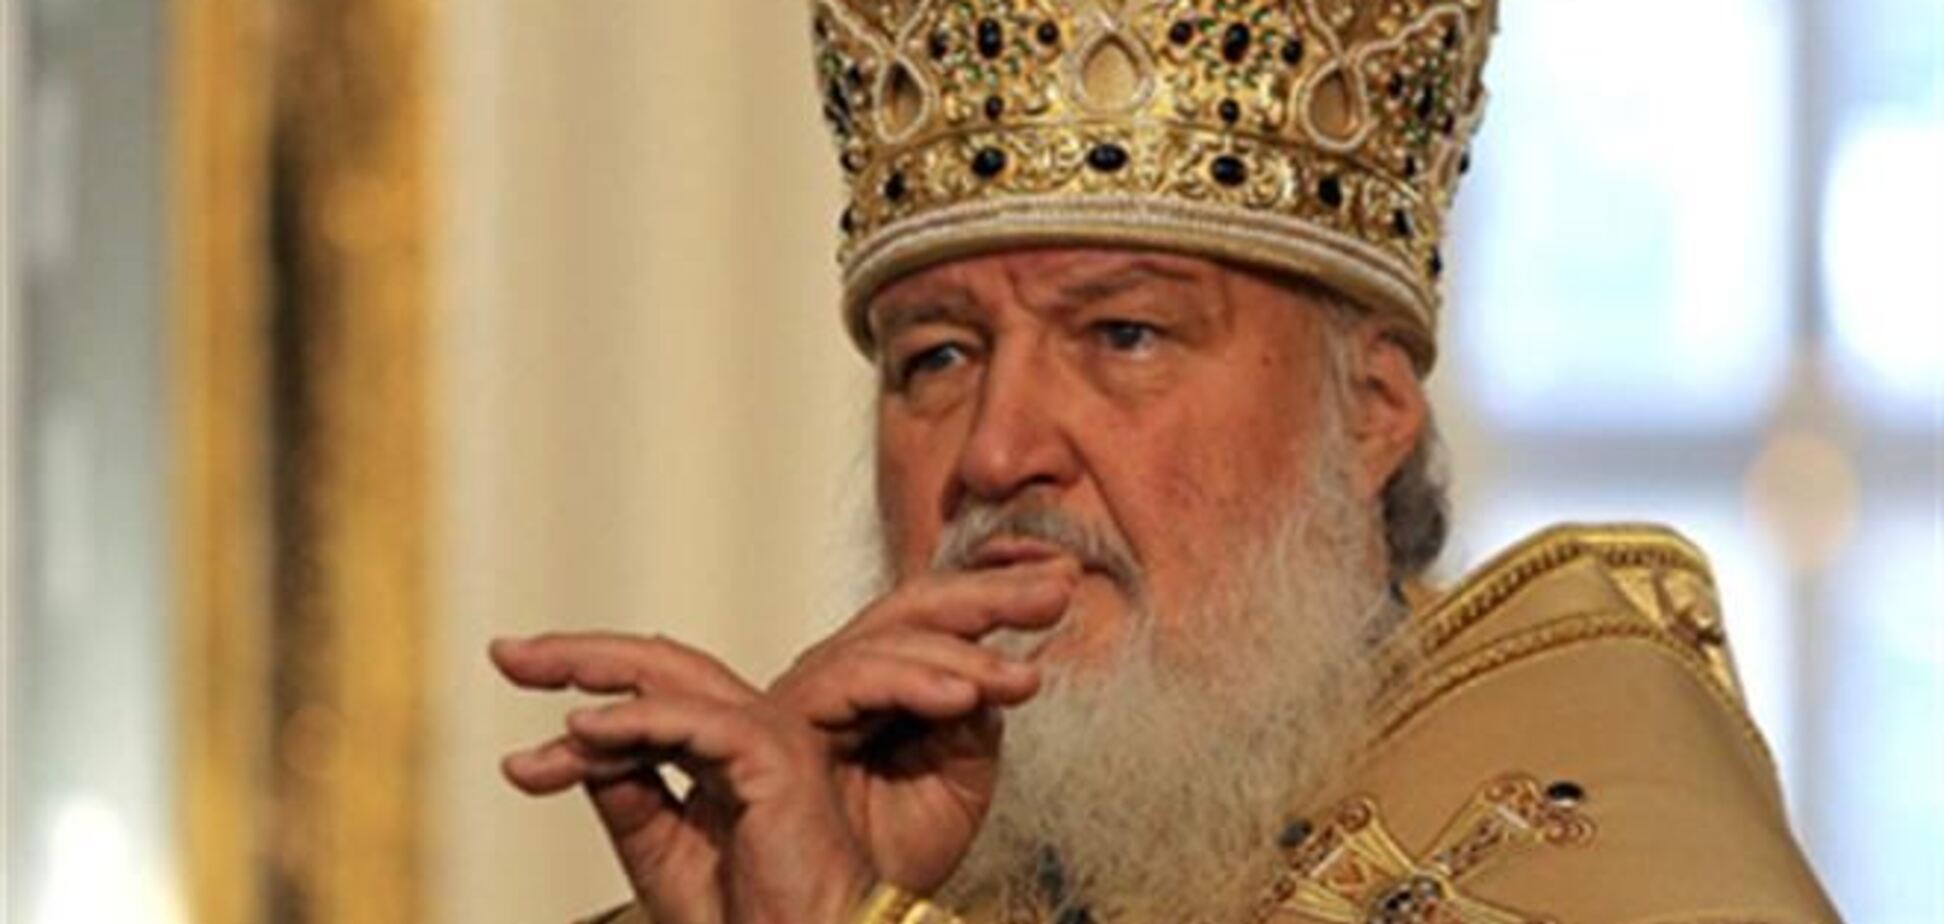 Патриарх Кирилл обещает повлиять на власть, чтобы не допустить кровопролития в Украине